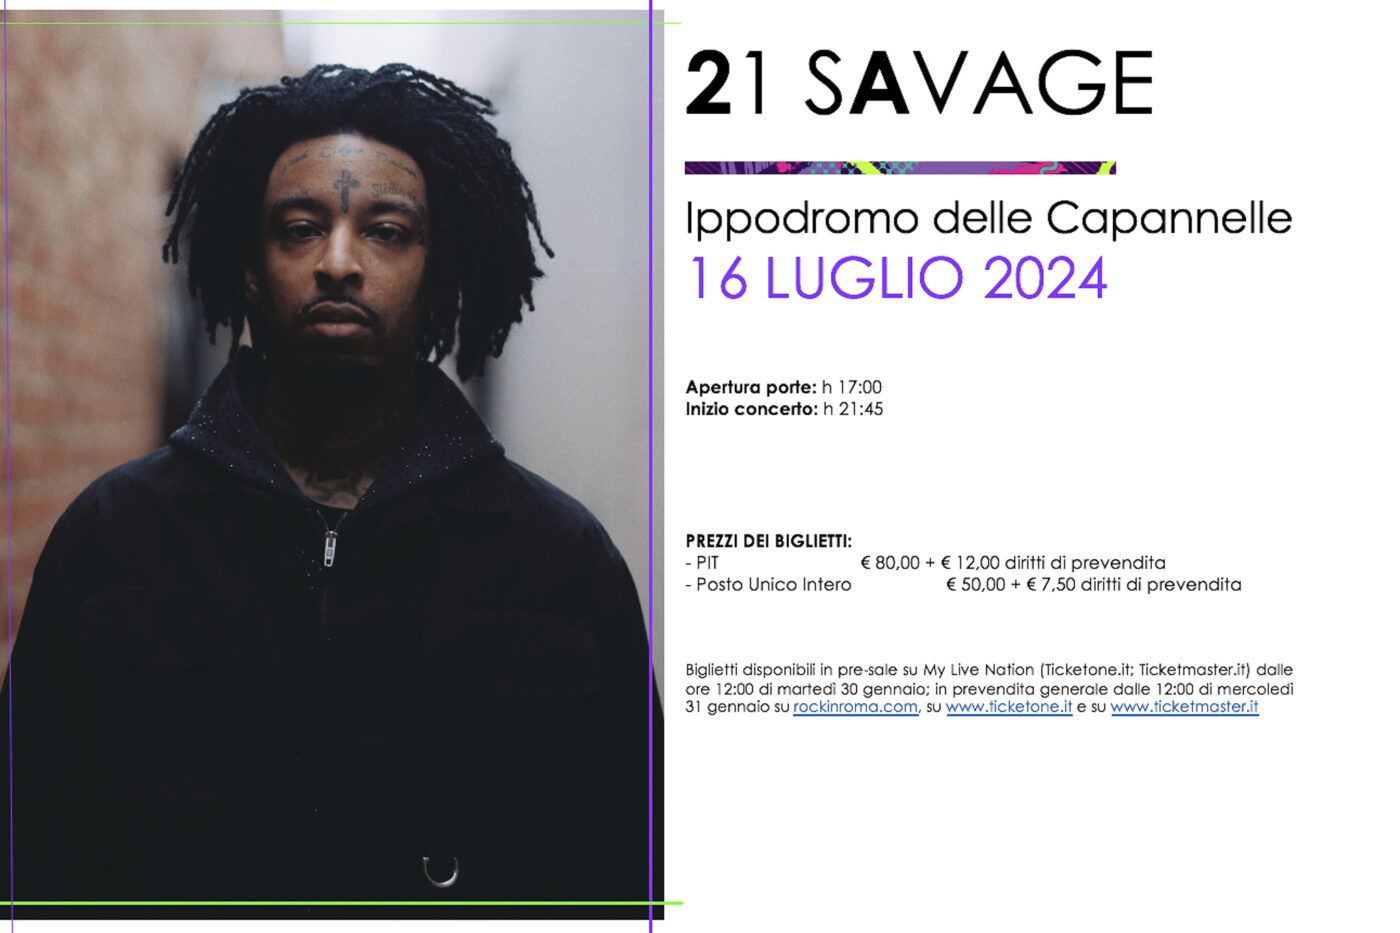 ROCK IN ROMA 2024: 21 SAVAGE live il 16 luglio 2024 all’Ippodromo delle Capannelle!